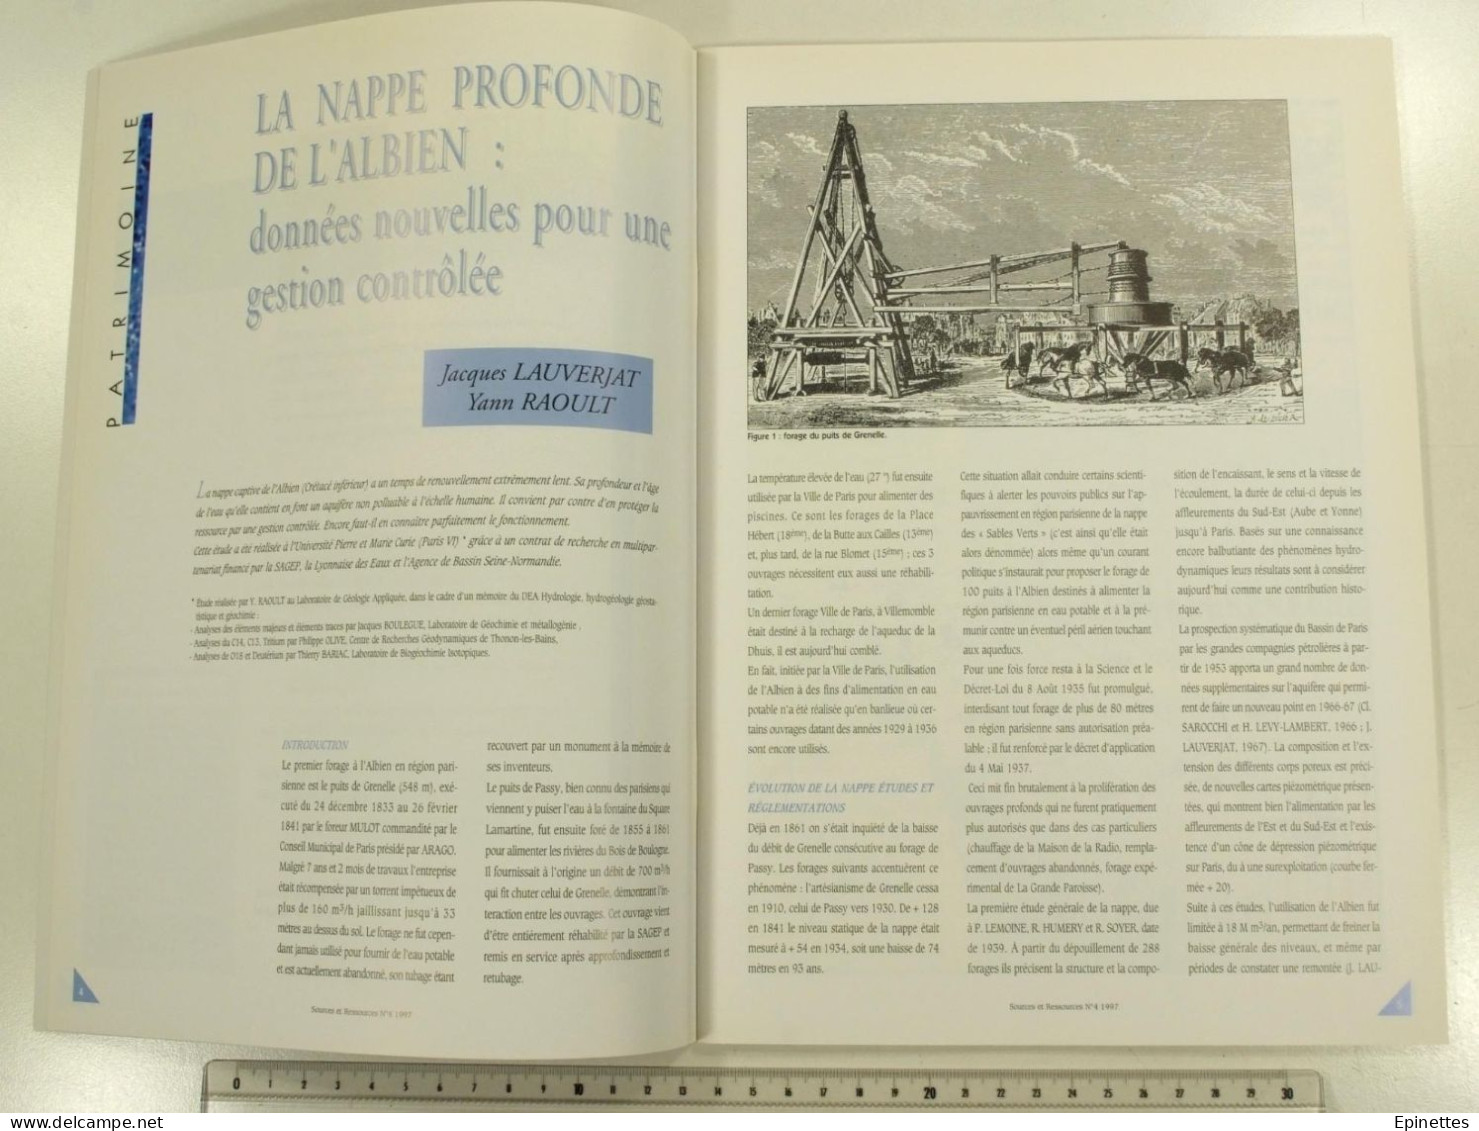 Lot 10 n°s Sources & Ressources, Revue technique de la SAGEP, Eau de Paris, n°1 à 9 + n° spécial Aqueducs, 1994-2001